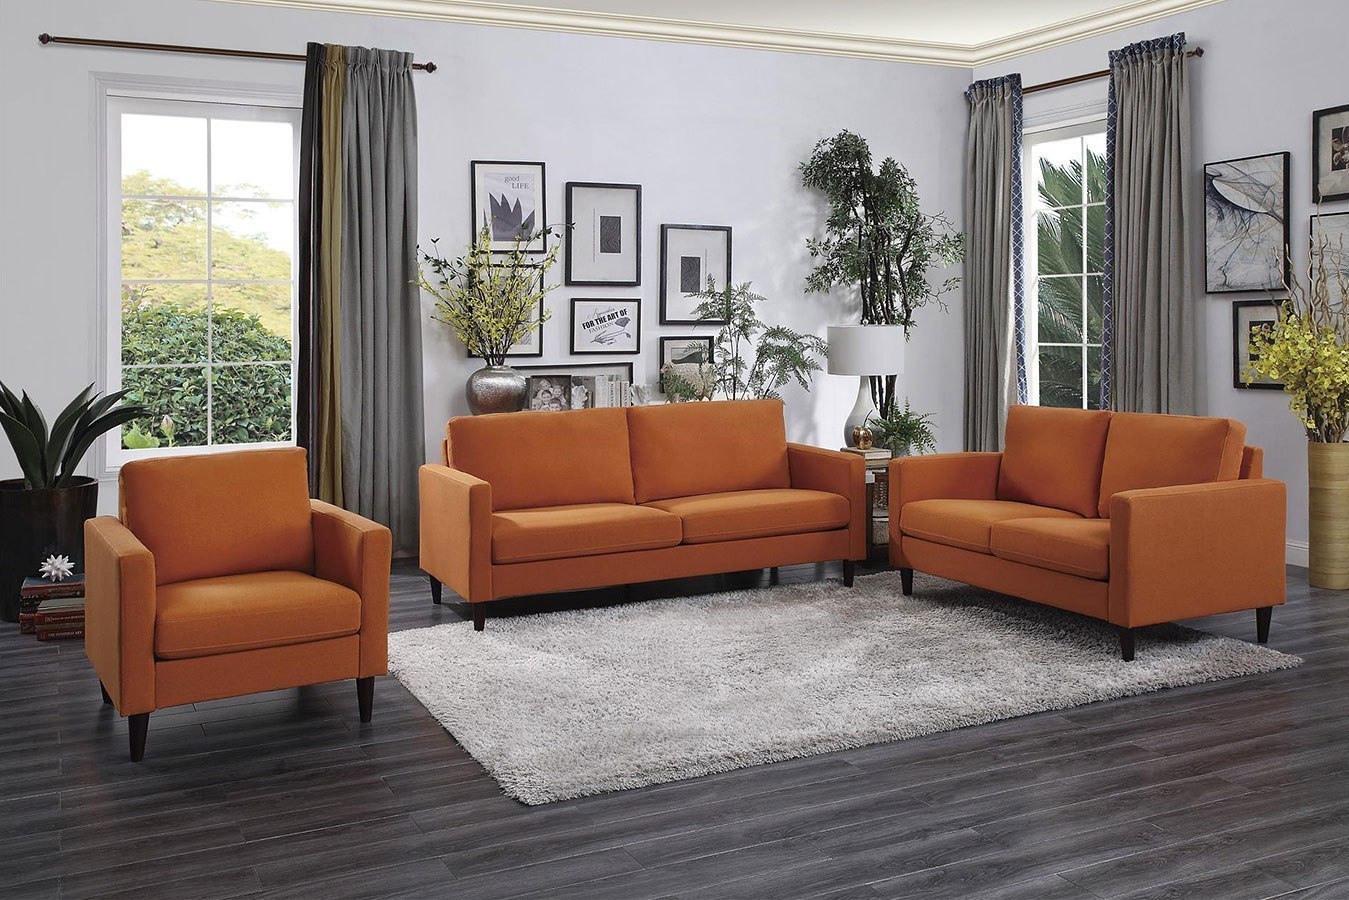 Halliday Living Room Set Orange By Homelegance FurniturePick